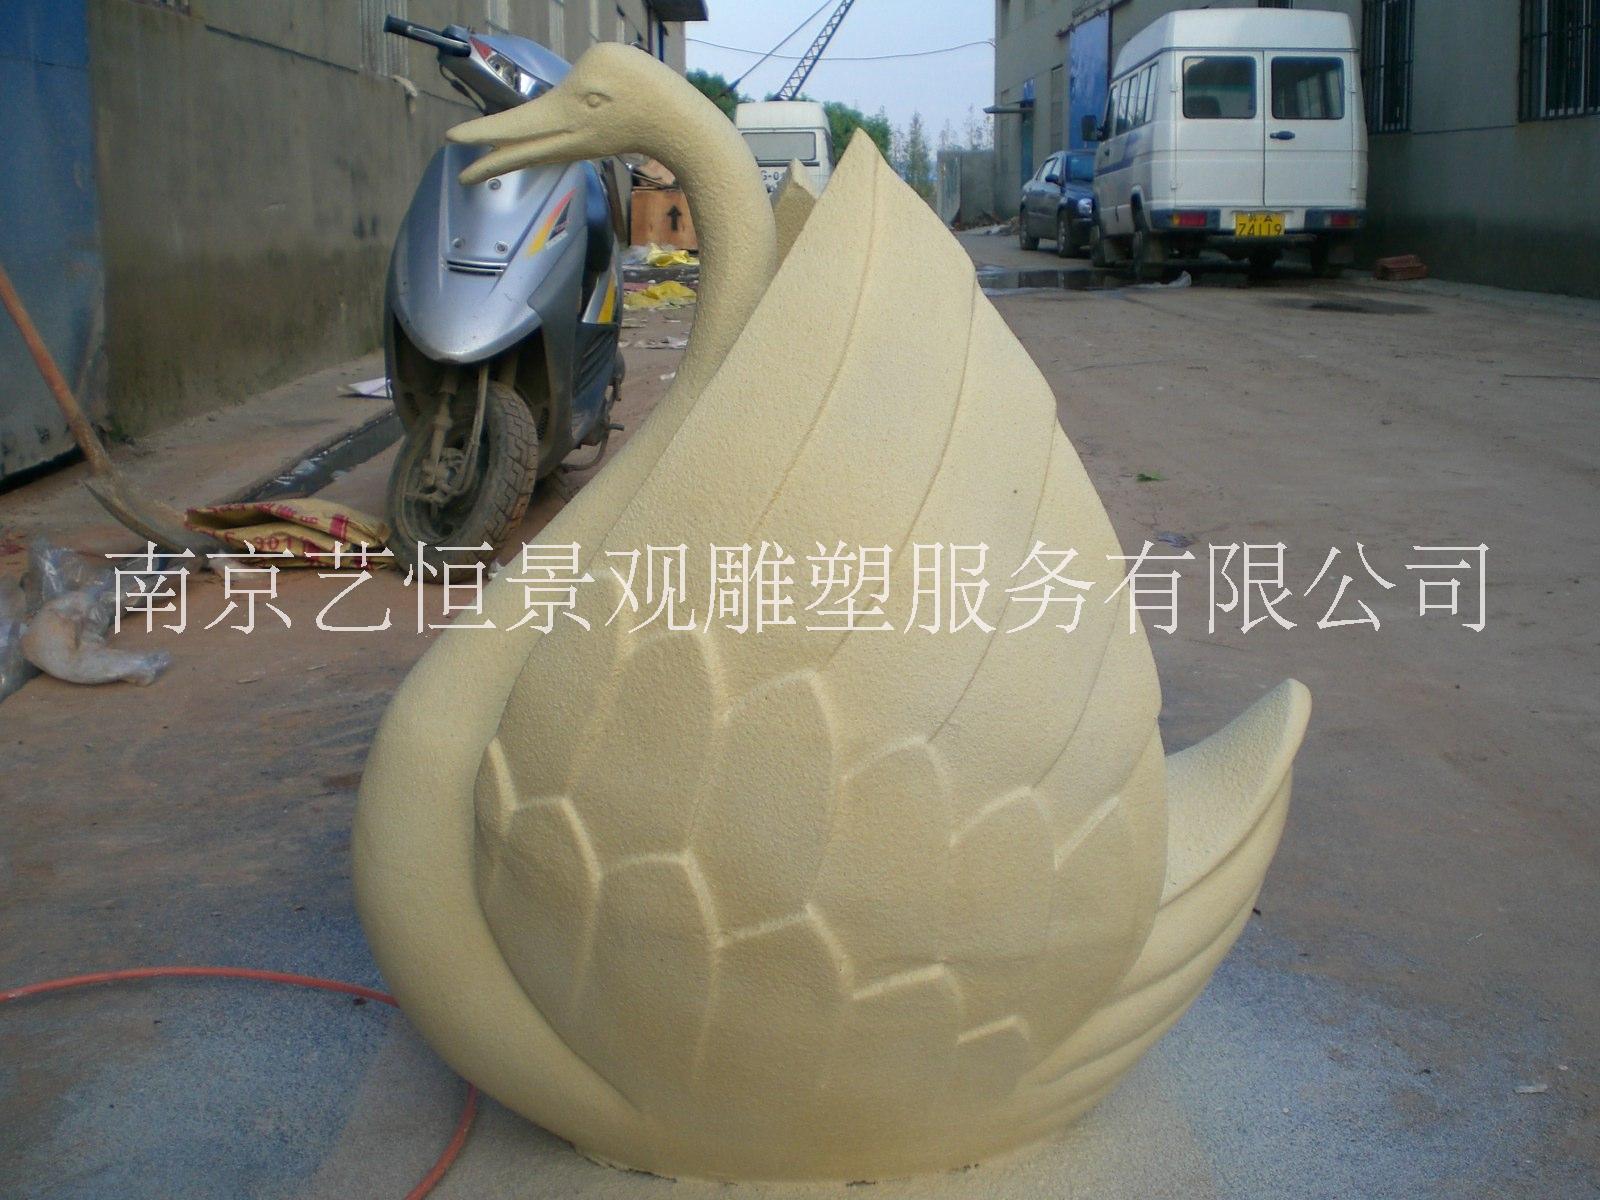 砂岩浮雕南京雕塑厂生产砂岩浮雕龙浮雕石浮雕浮雕墙高浮雕浮雕设计图片